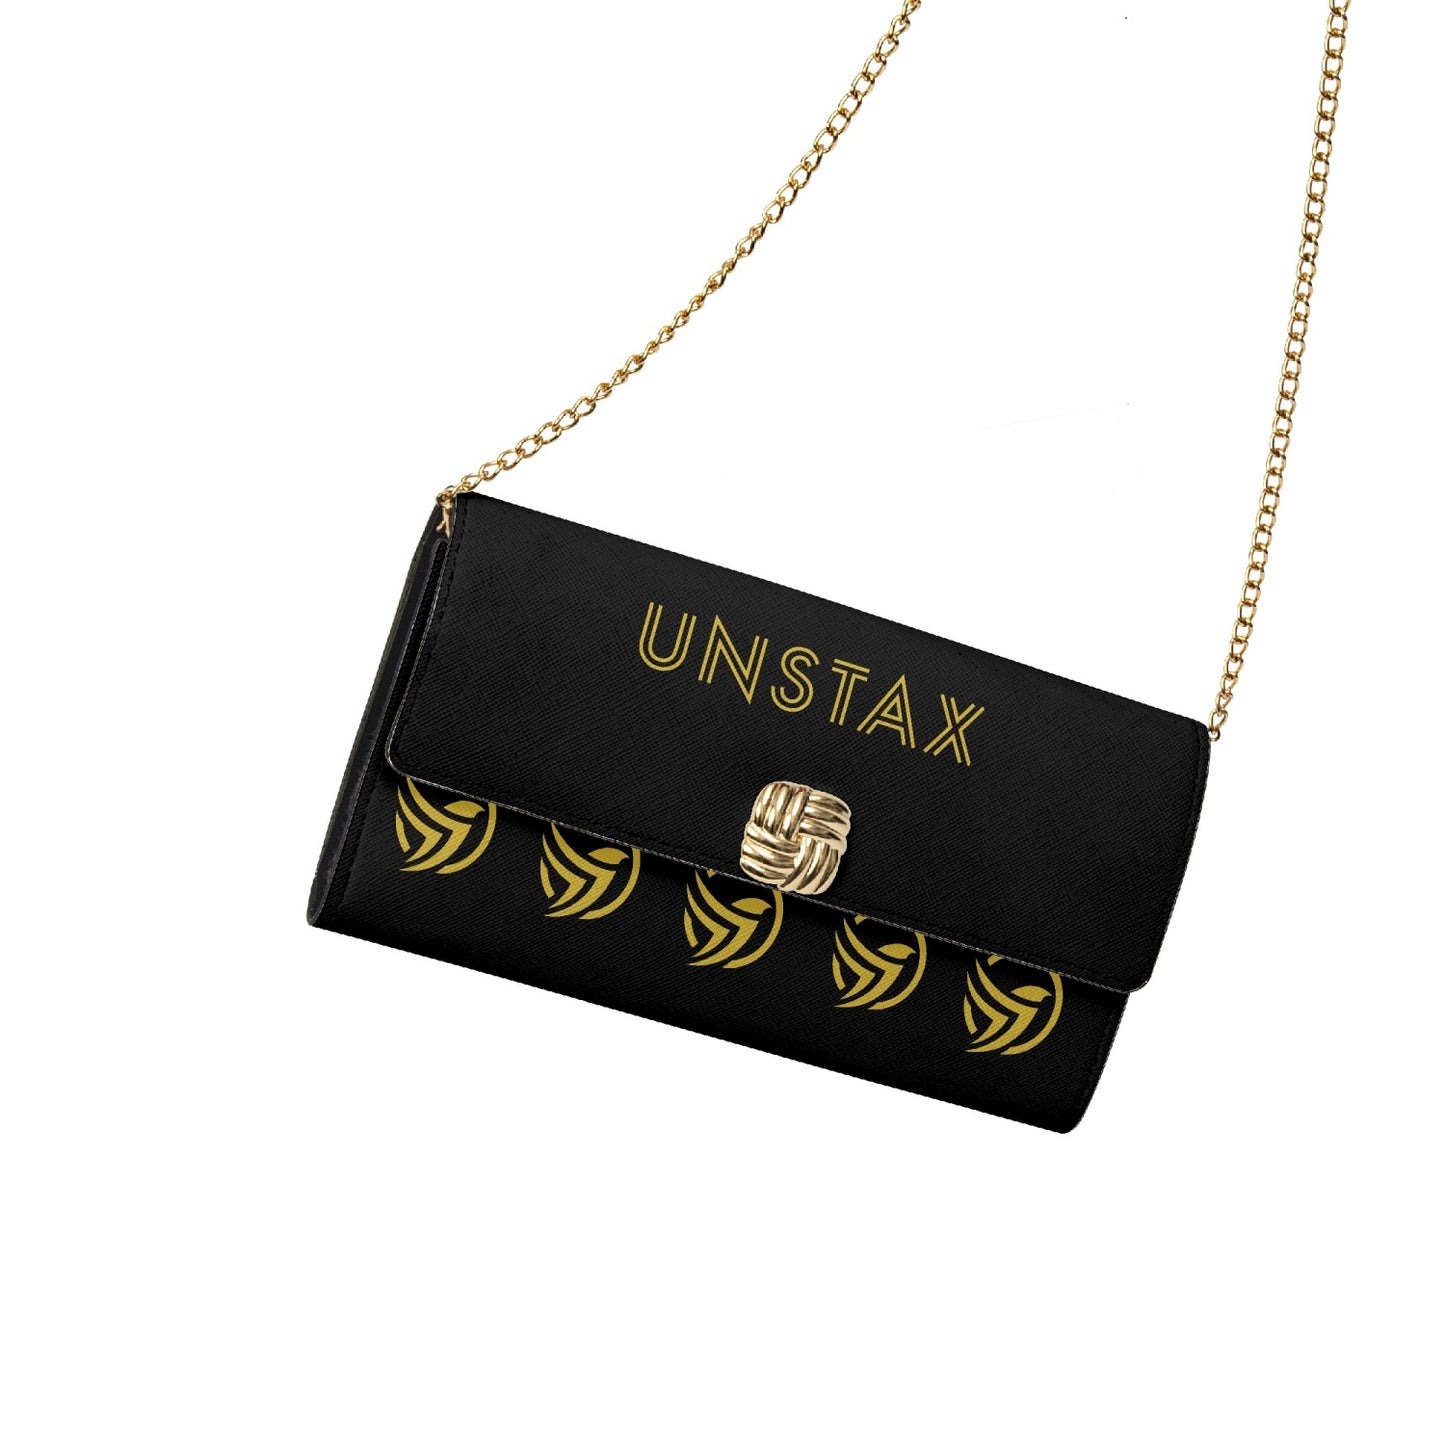 Unstax Chain Type Flap Shoulder Bag